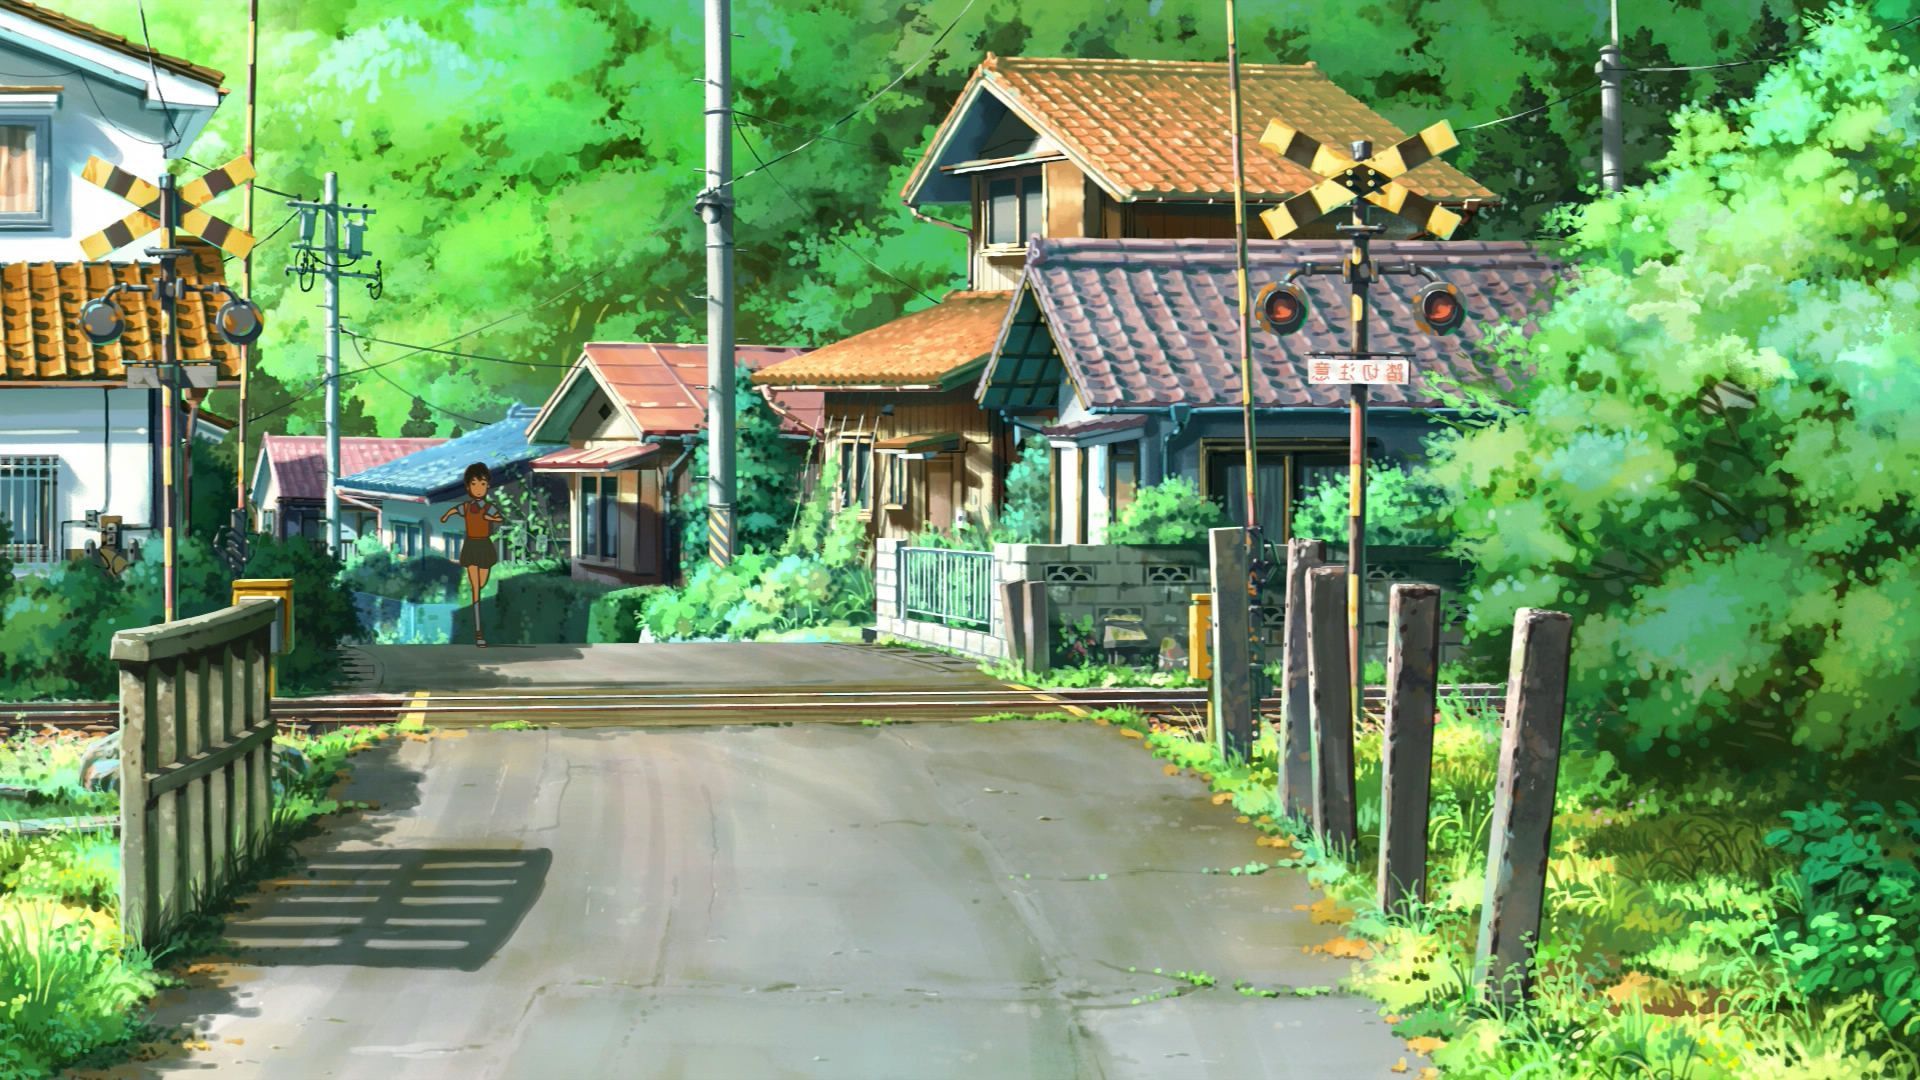 Village Anime Scenery Wallpaper Free Desktop Wallpaper. Anime scenery wallpaper, Scenery wallpaper, Landscape wallpaper